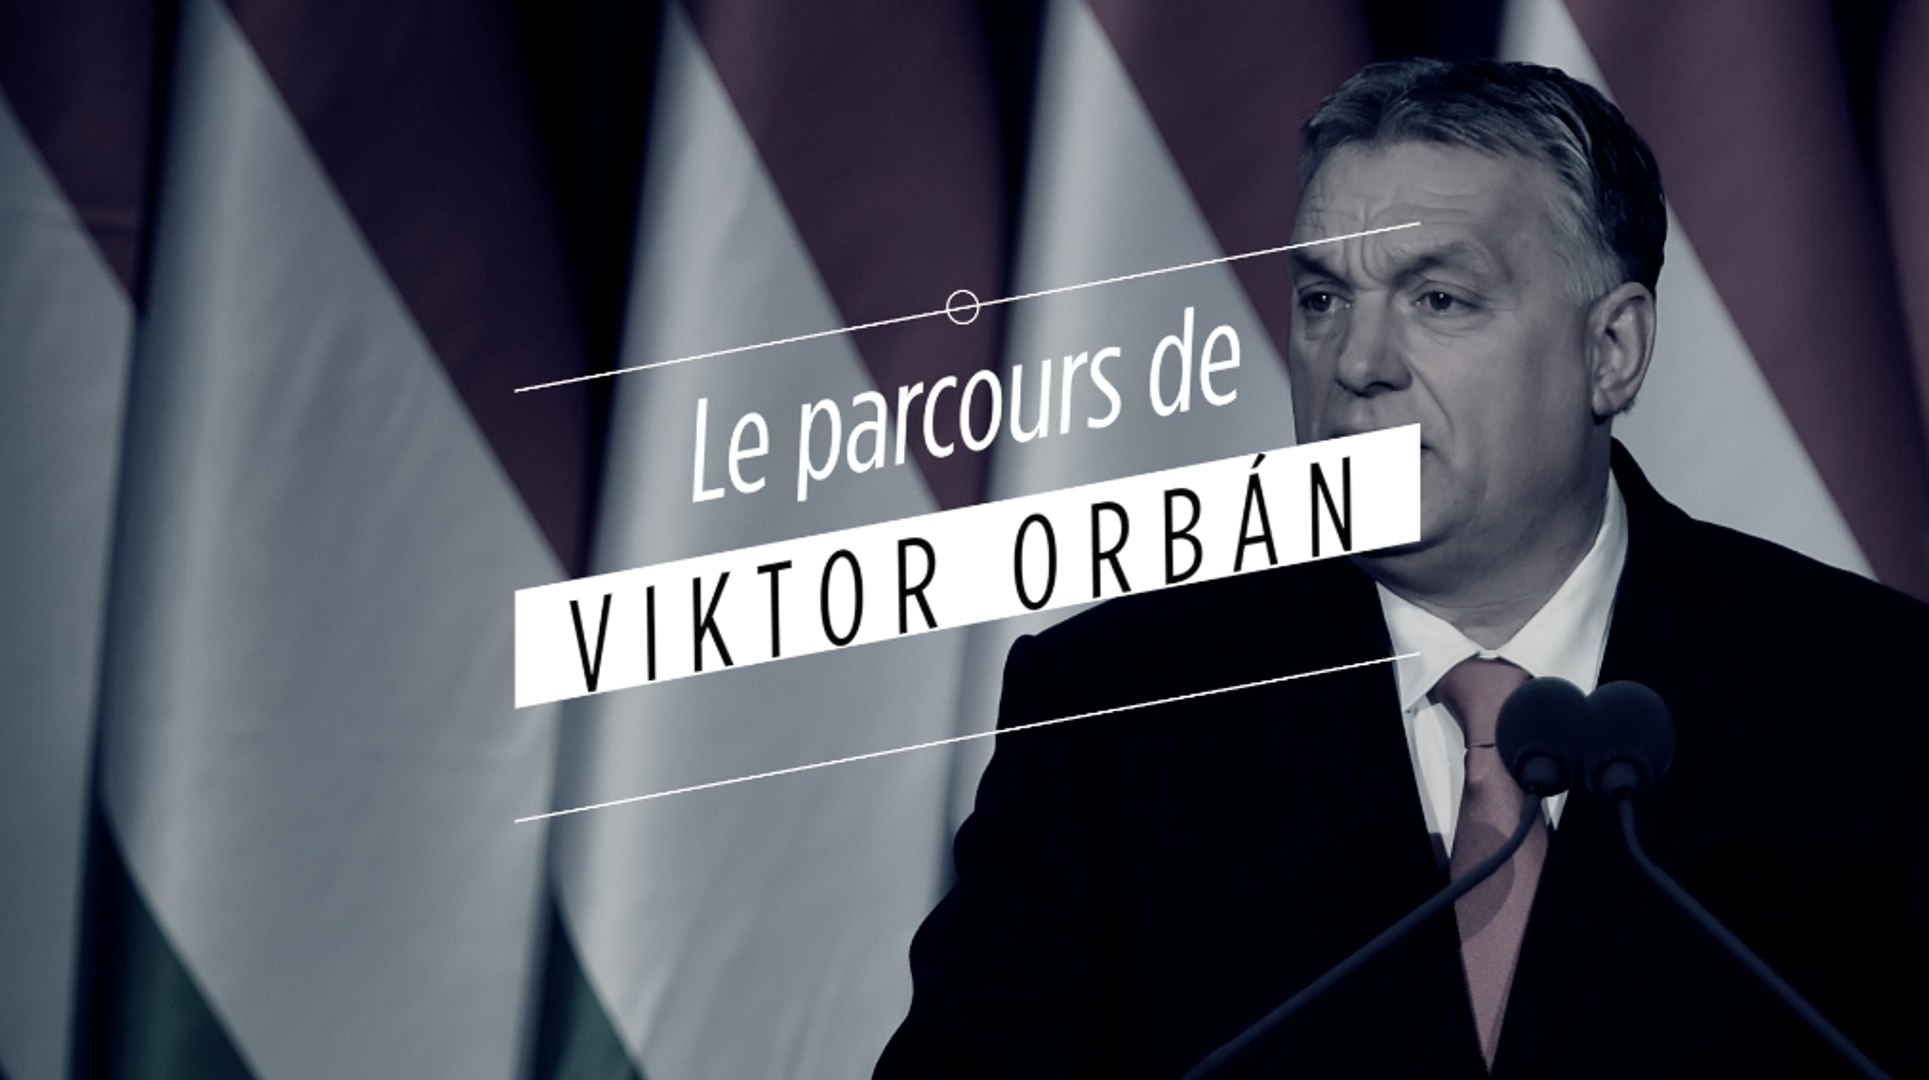 Le parcours politique de Viktor Orbán